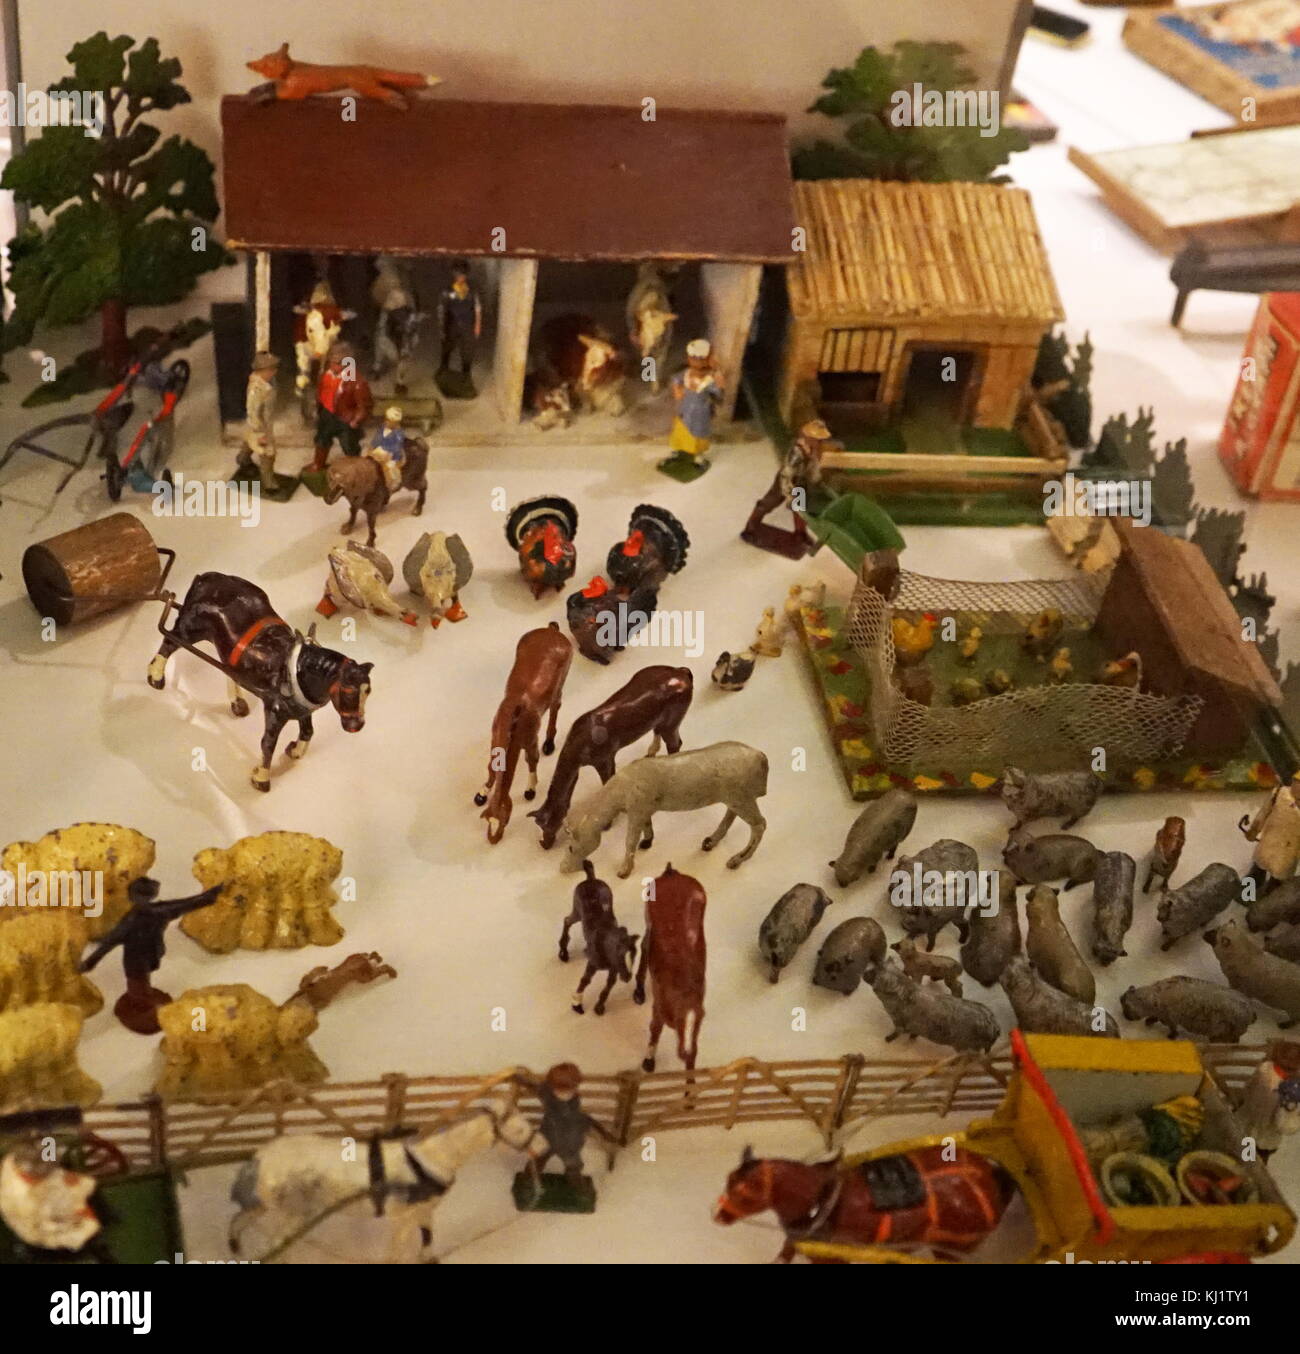 Figuritas de plástico utilizado para recrear una escena Farm Yard. Fecha del siglo XIX Foto de stock